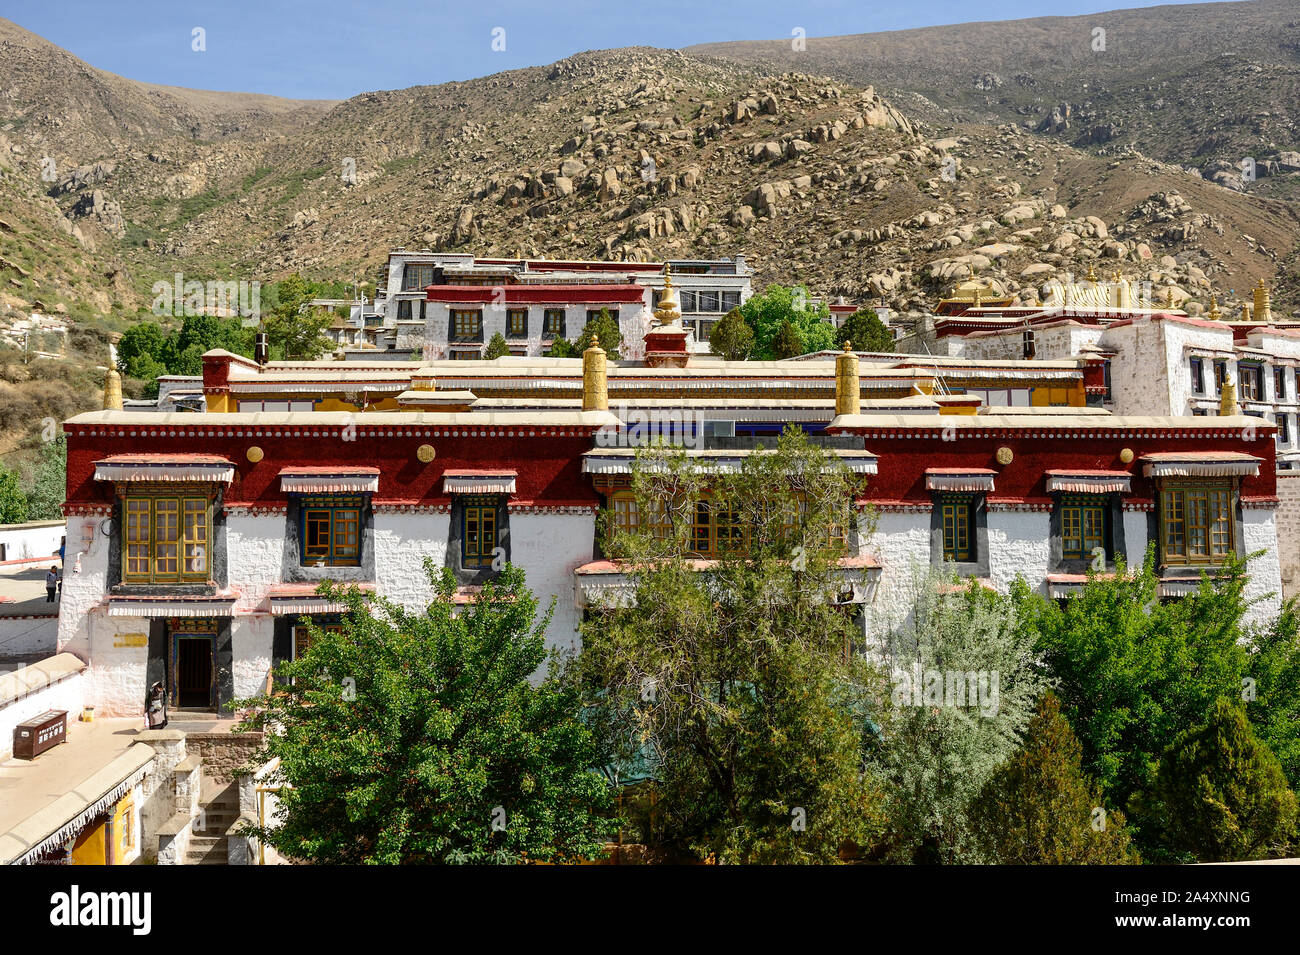 Gegen eine Himalayan Berghang gelegen, Deprung Kloster ist ein Knotenpunkt des Tibetischen Buddhismus Bildung Seit dem 14. Jahrhundert. Stockfoto